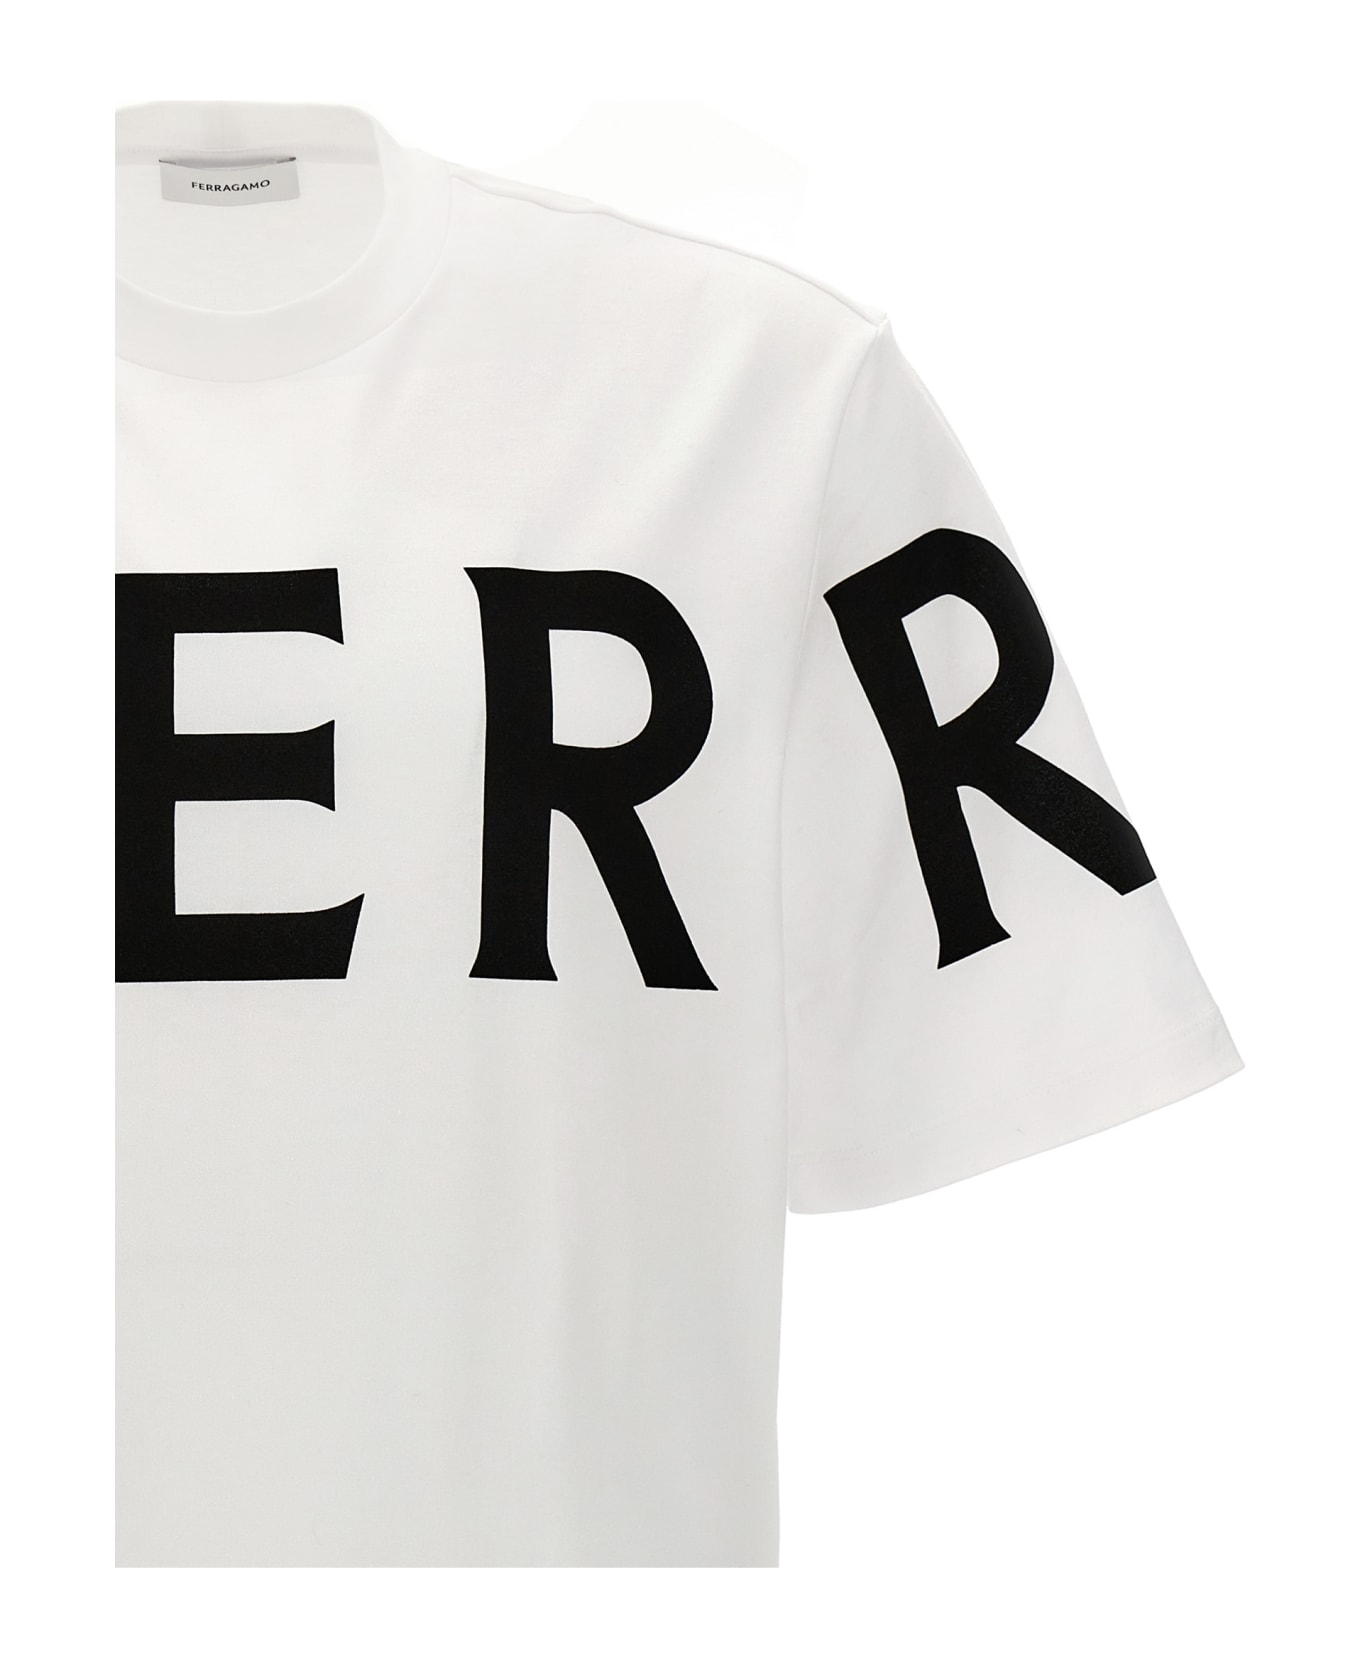 Ferragamo Logo Print T-shirt - White/Black シャツ